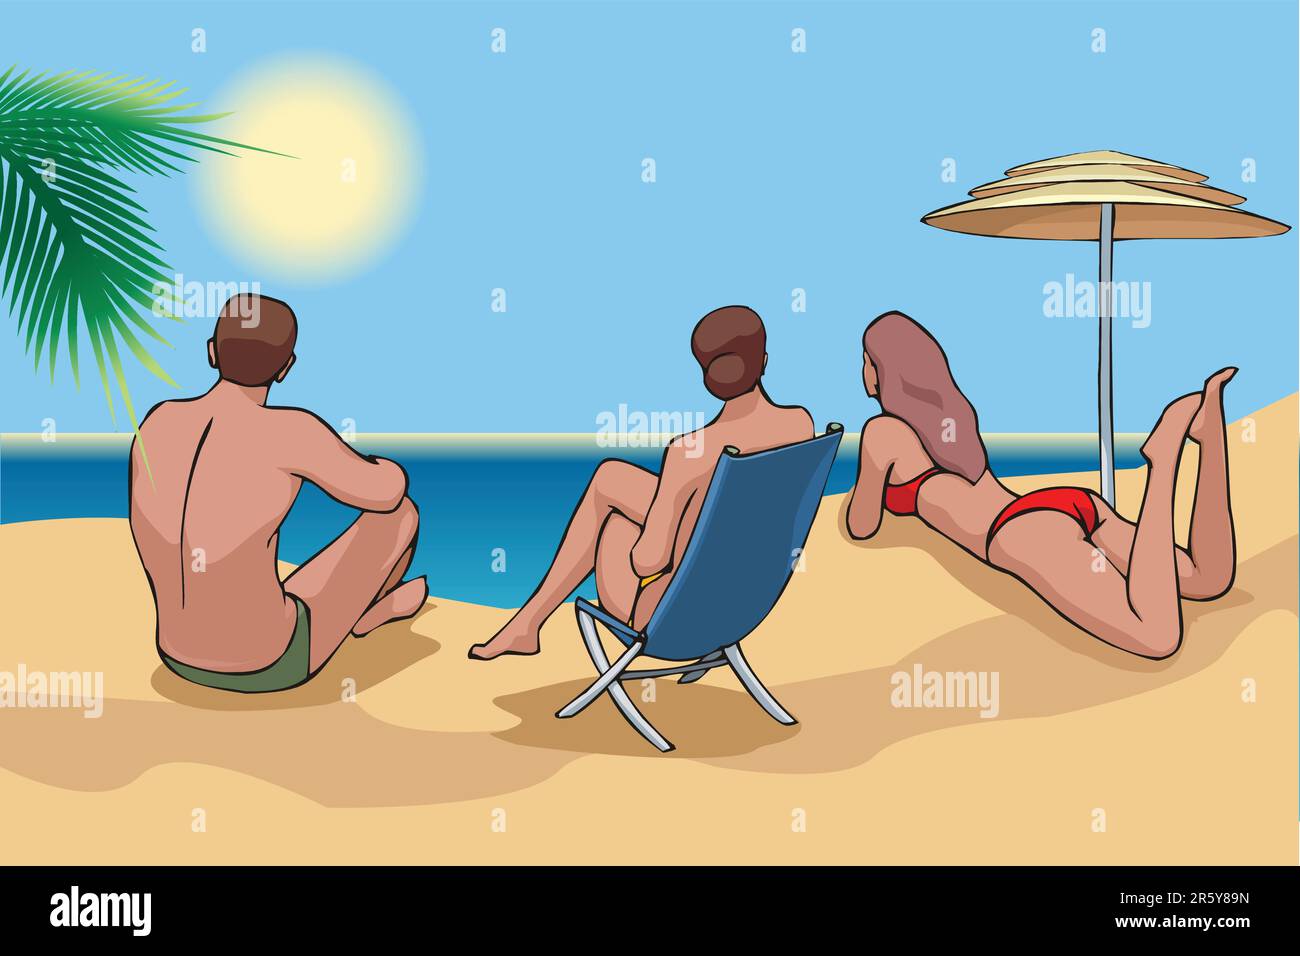 3 junge Erwachsene sitzen am Strand und beobachten das Meer Stock Vektor